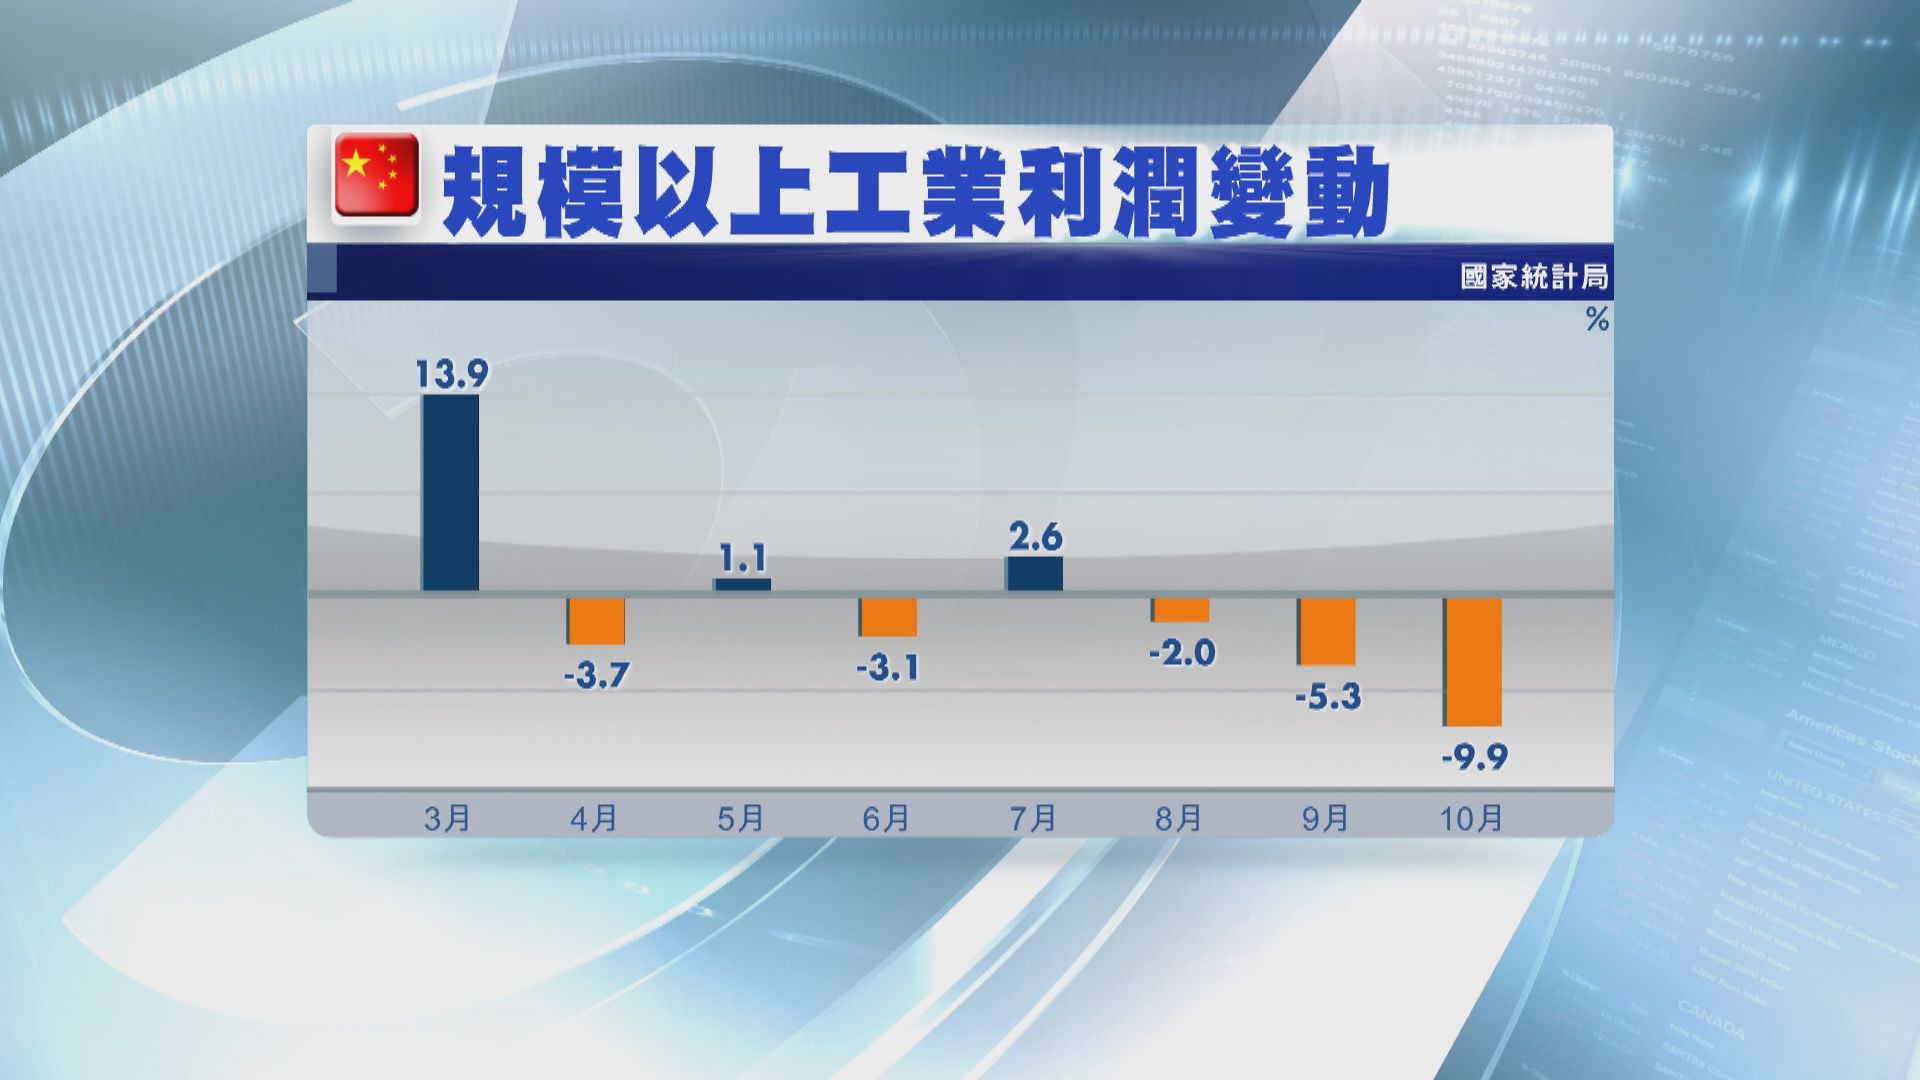 【中國數據】工業企業利潤連跌三個月 紀錄以來最差